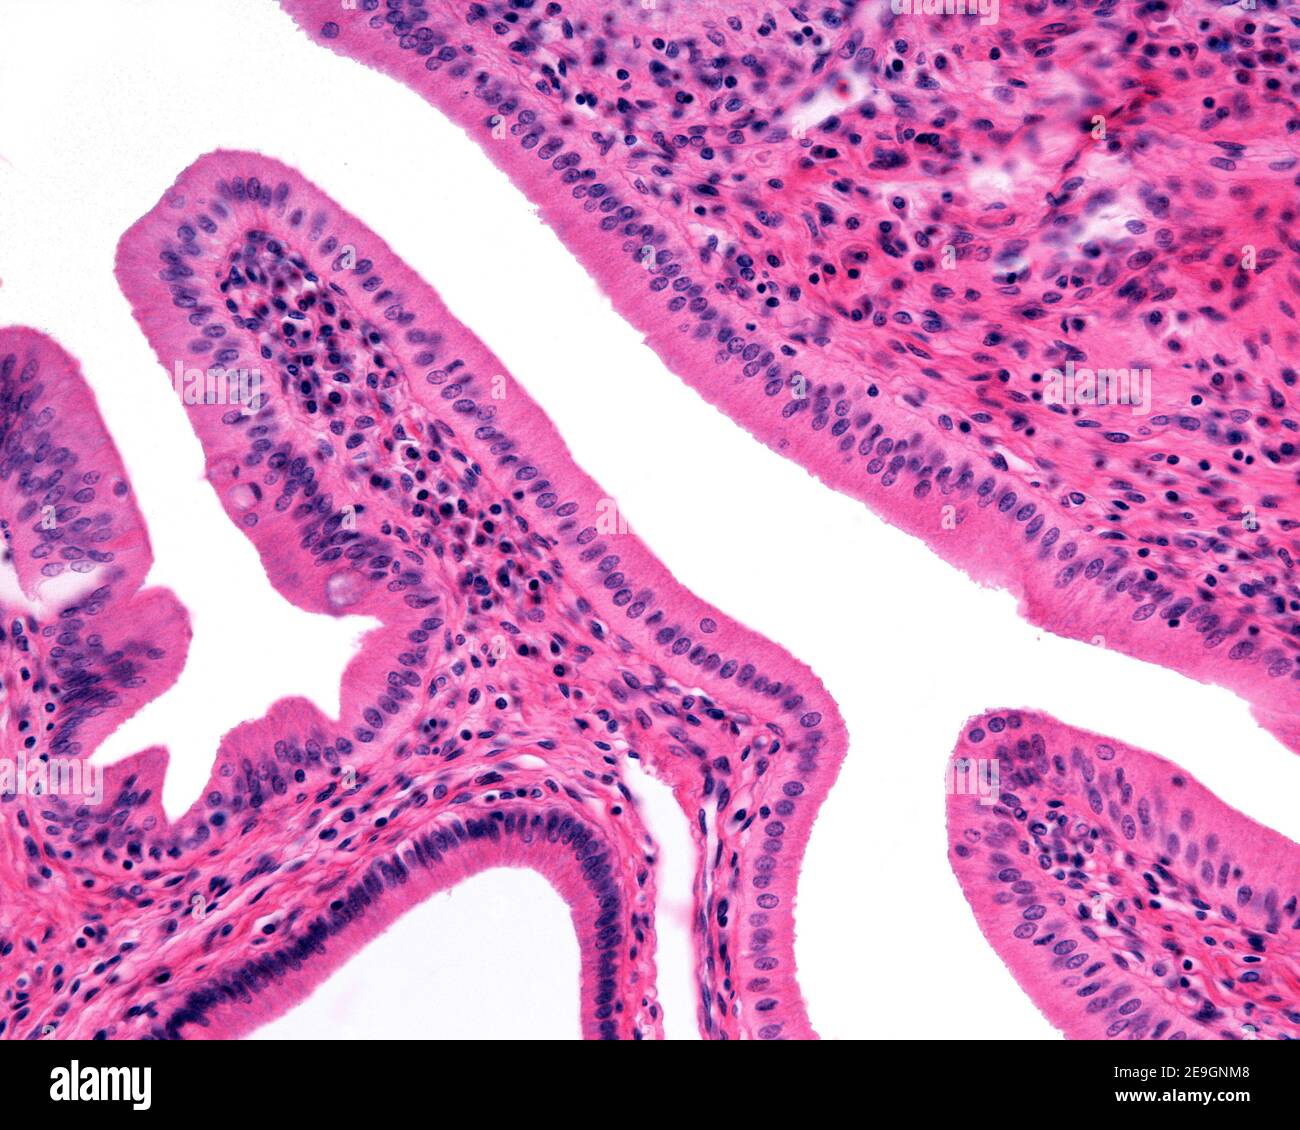 Mikrograph mit hoher Vergrößerung, der das einfache Säulenepithel zeigt, das den Gallengang am Ampulle von Vater auskleidet. Stockfoto